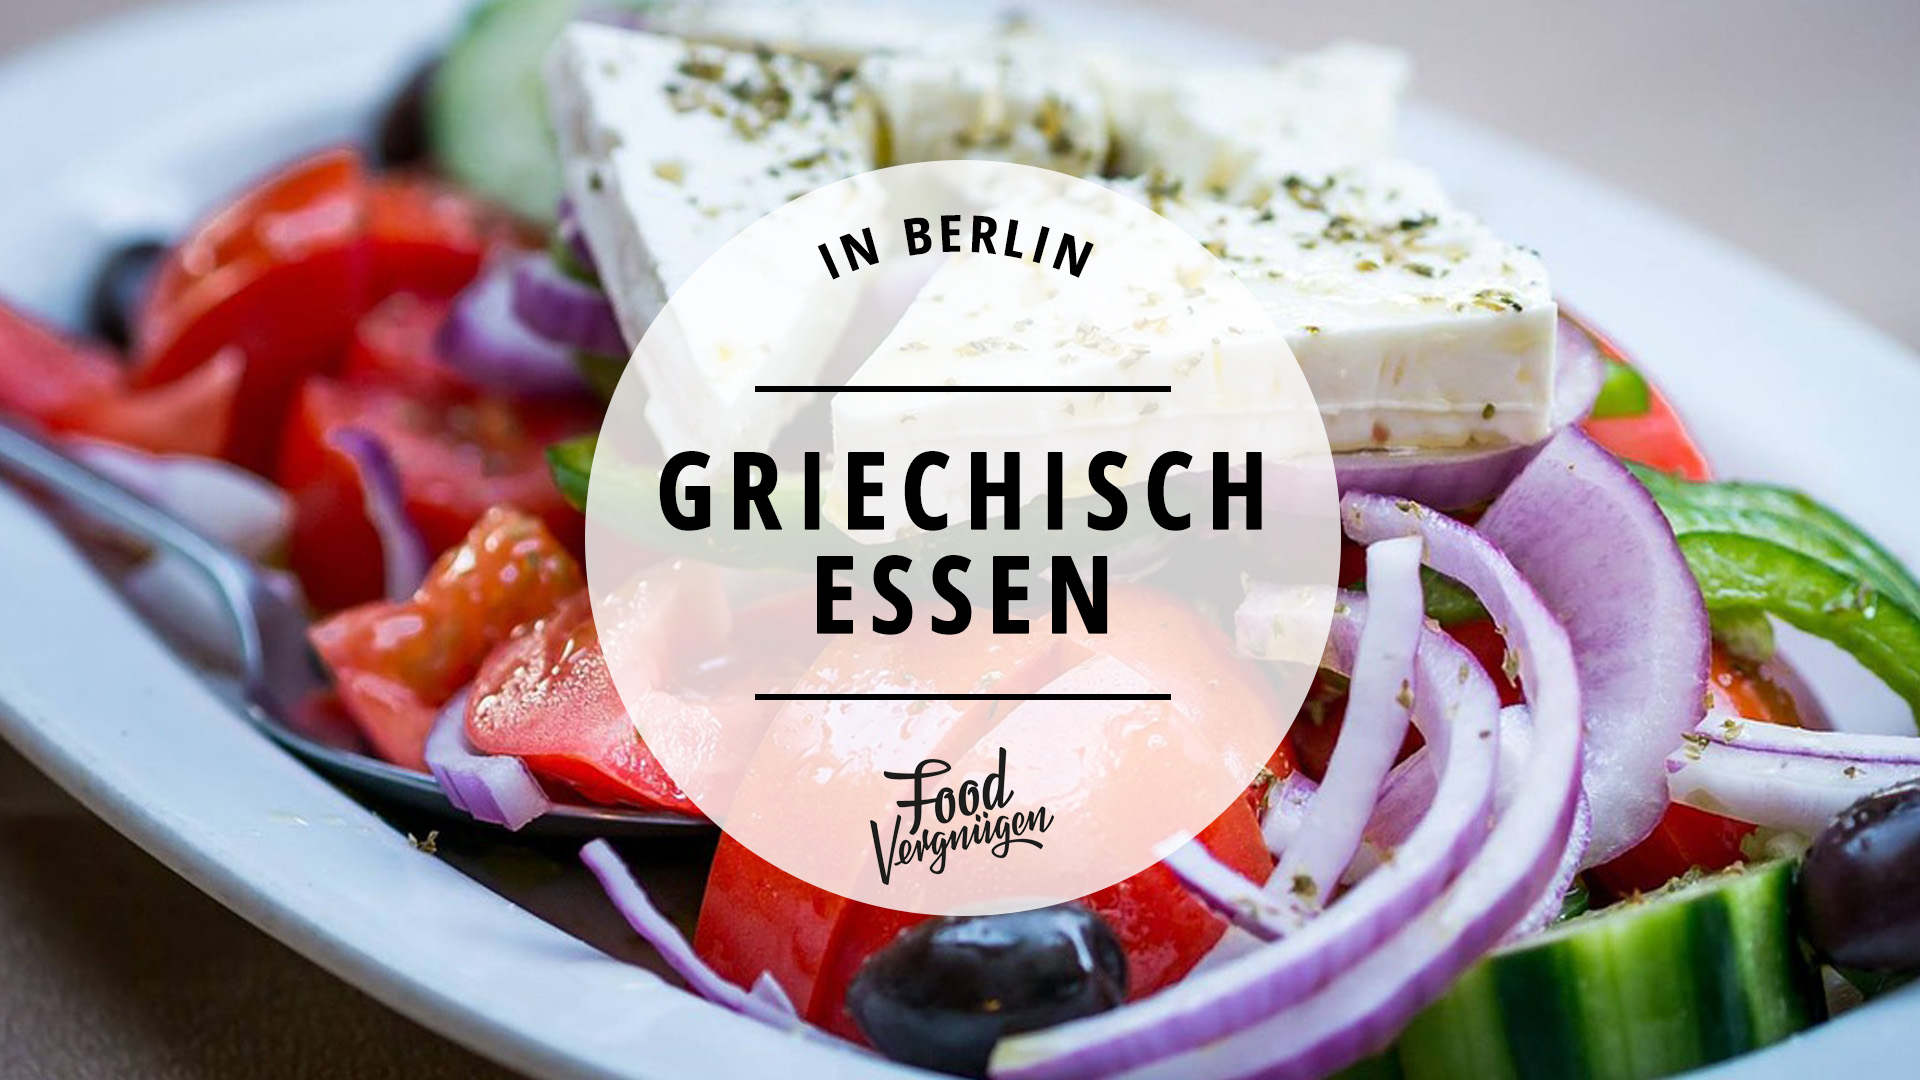 11 Restaurants In Denen Ihr Richtig Lecker Griechisch Essen Konnt Mit Vergnugen Berlin